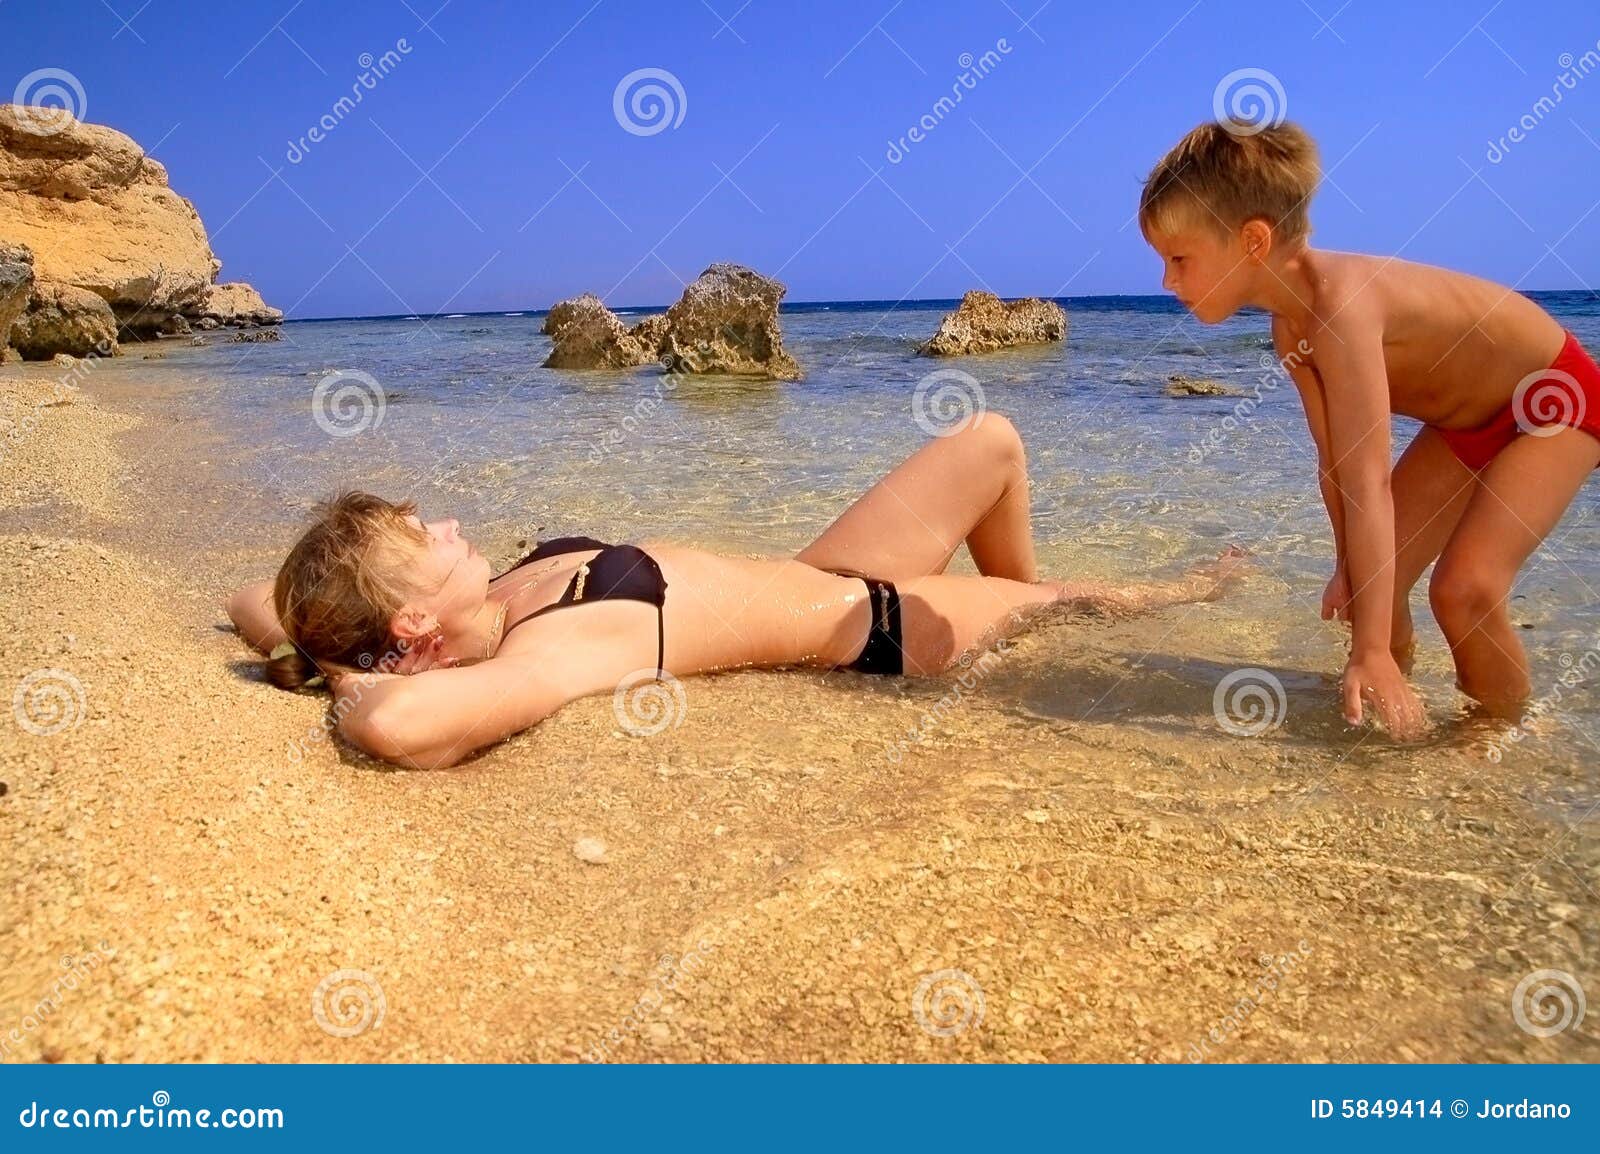 рассказы голая мама на пляже фото 21